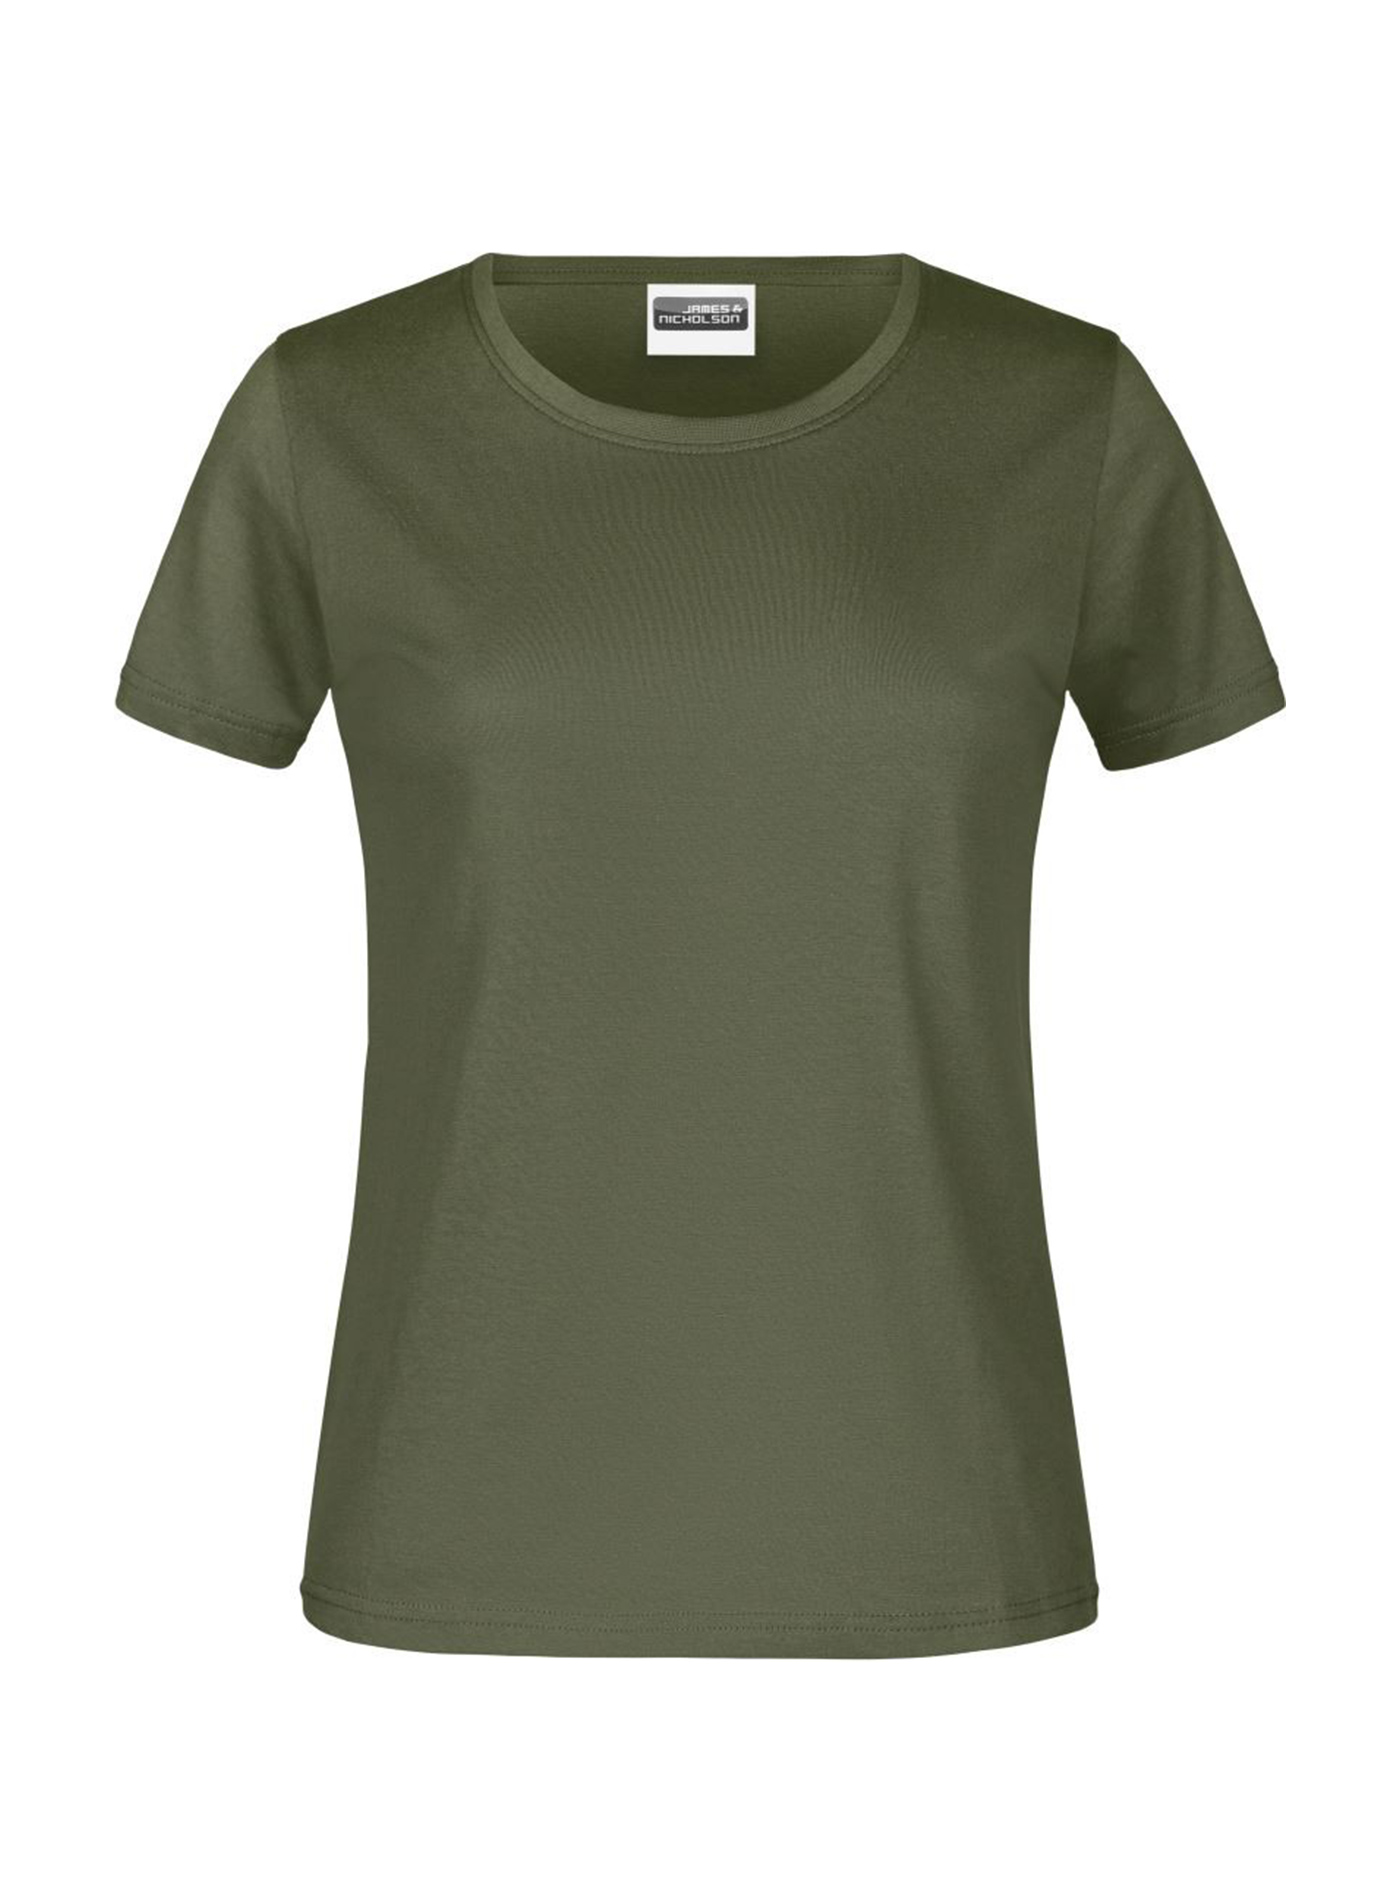 Dámské tričko James & Nicholson basic - Olivově zelená M